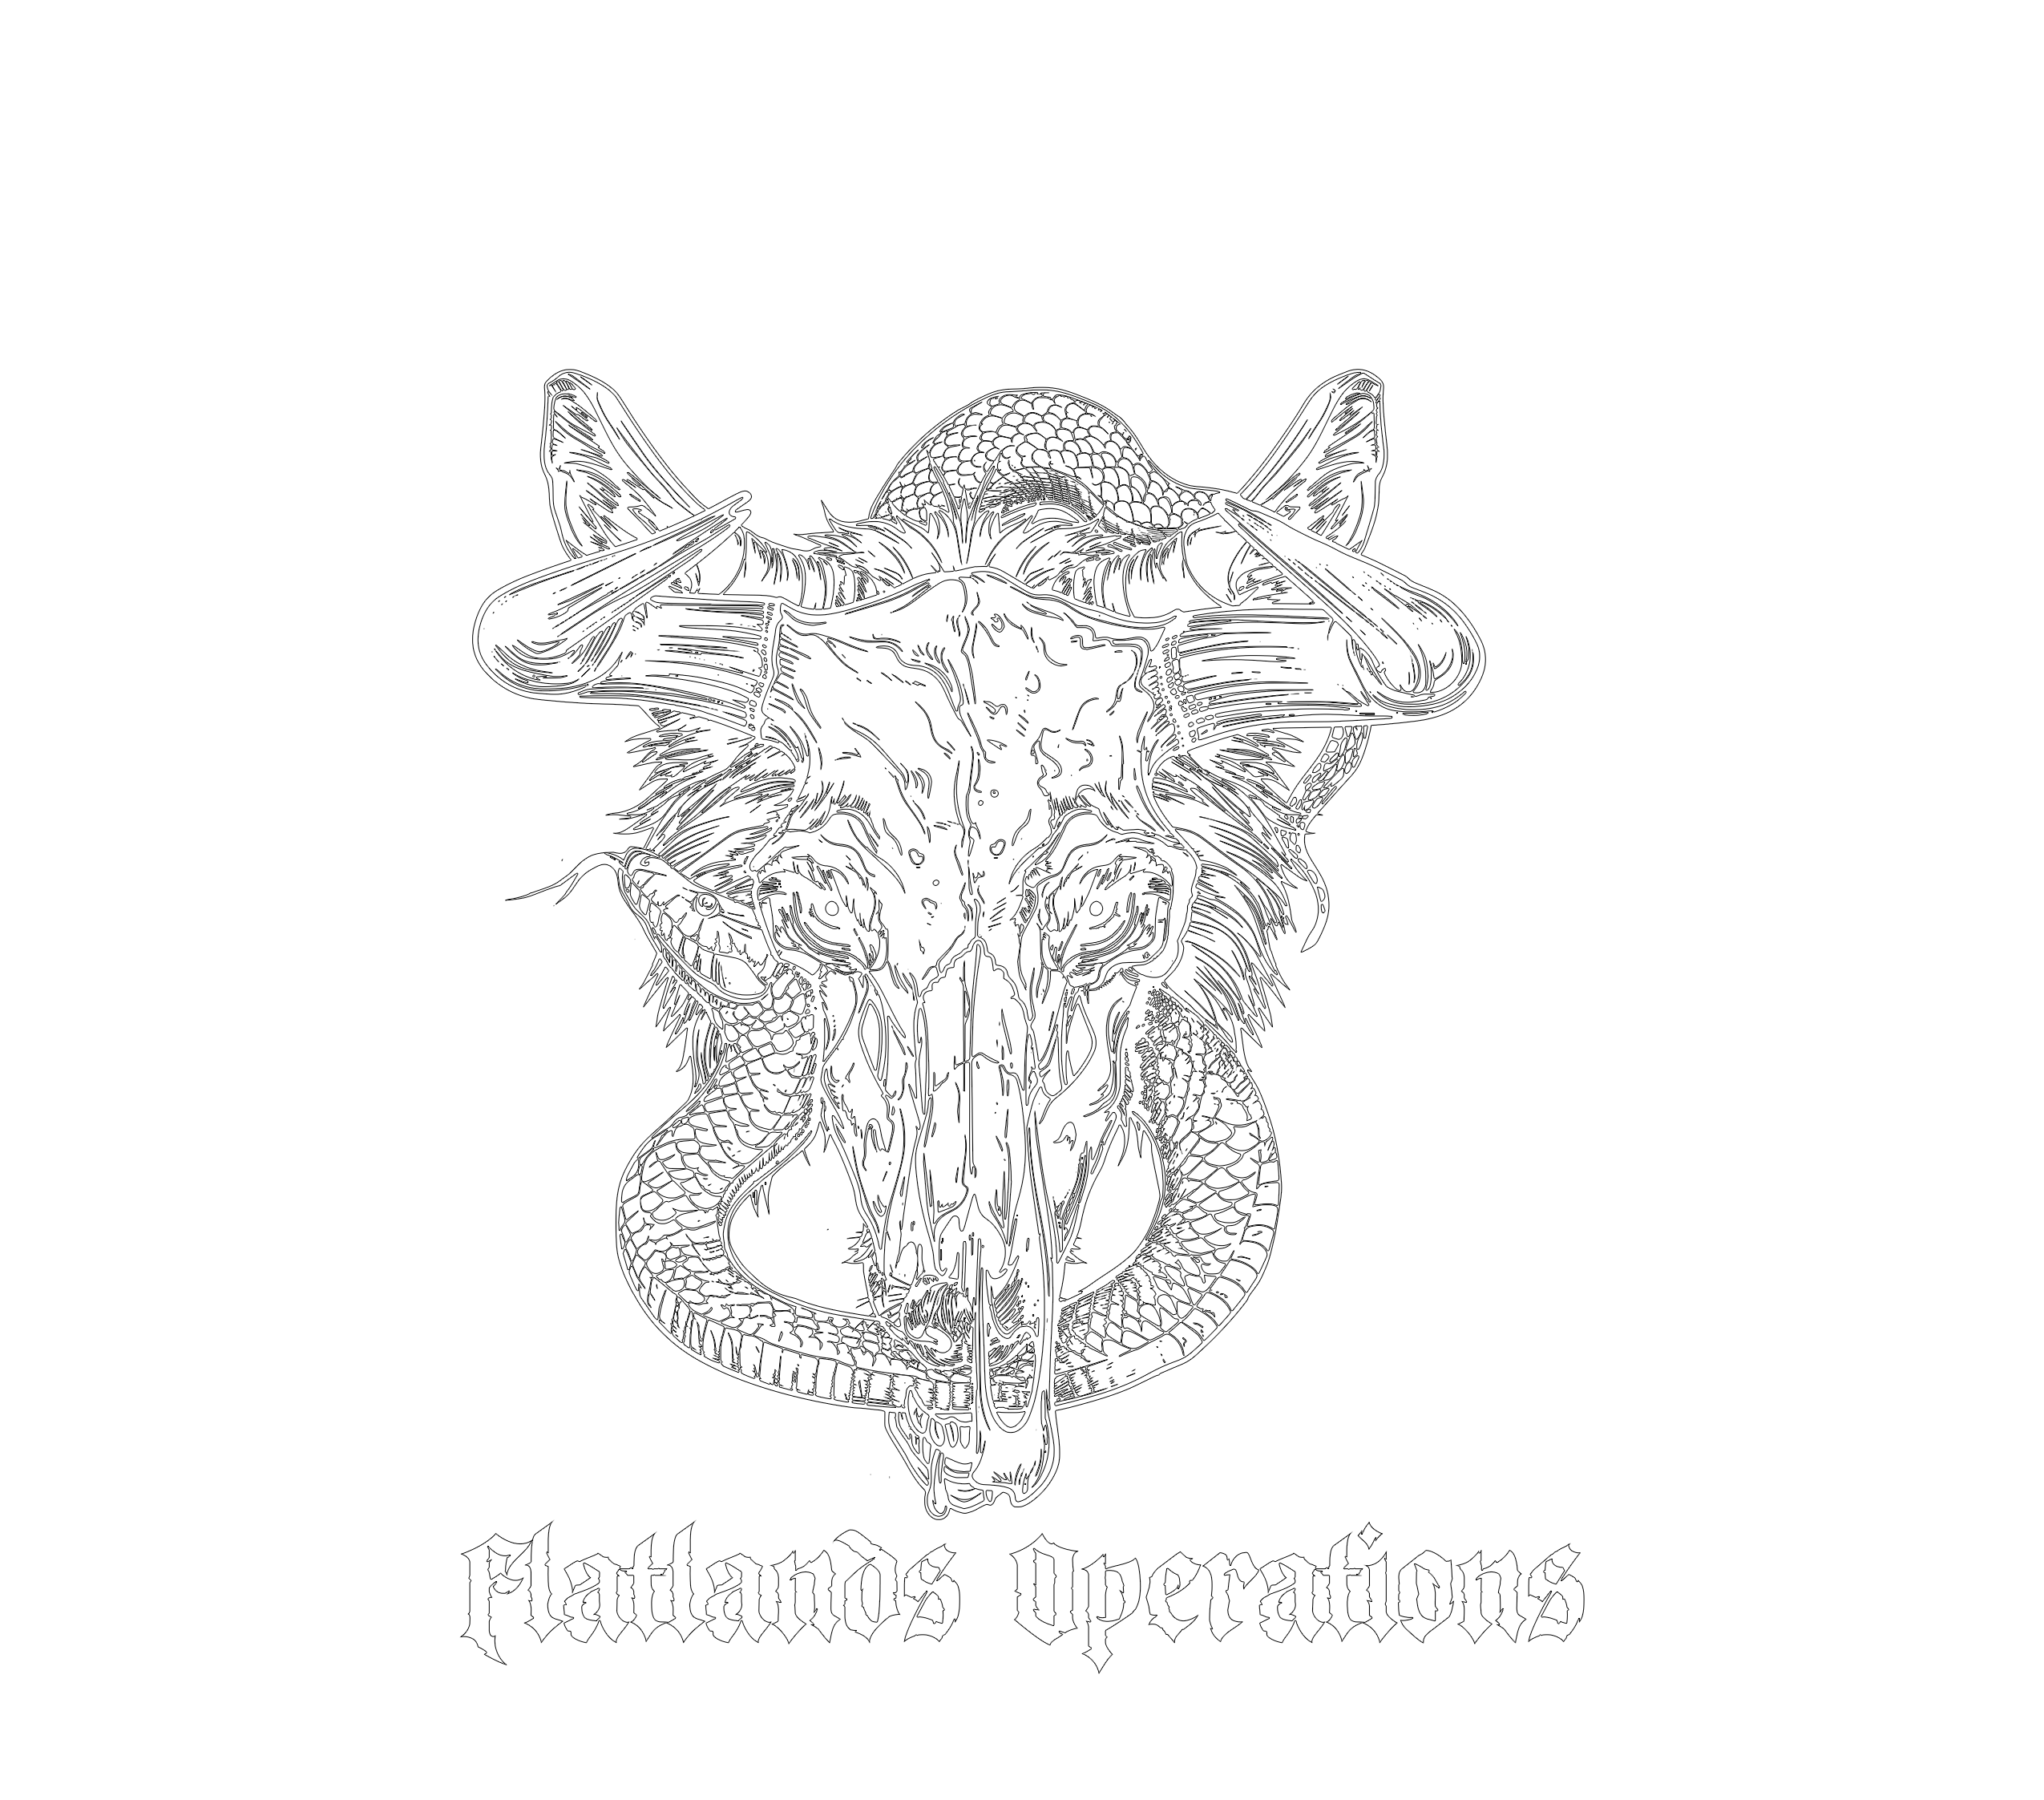 Flatlands Operations LLC